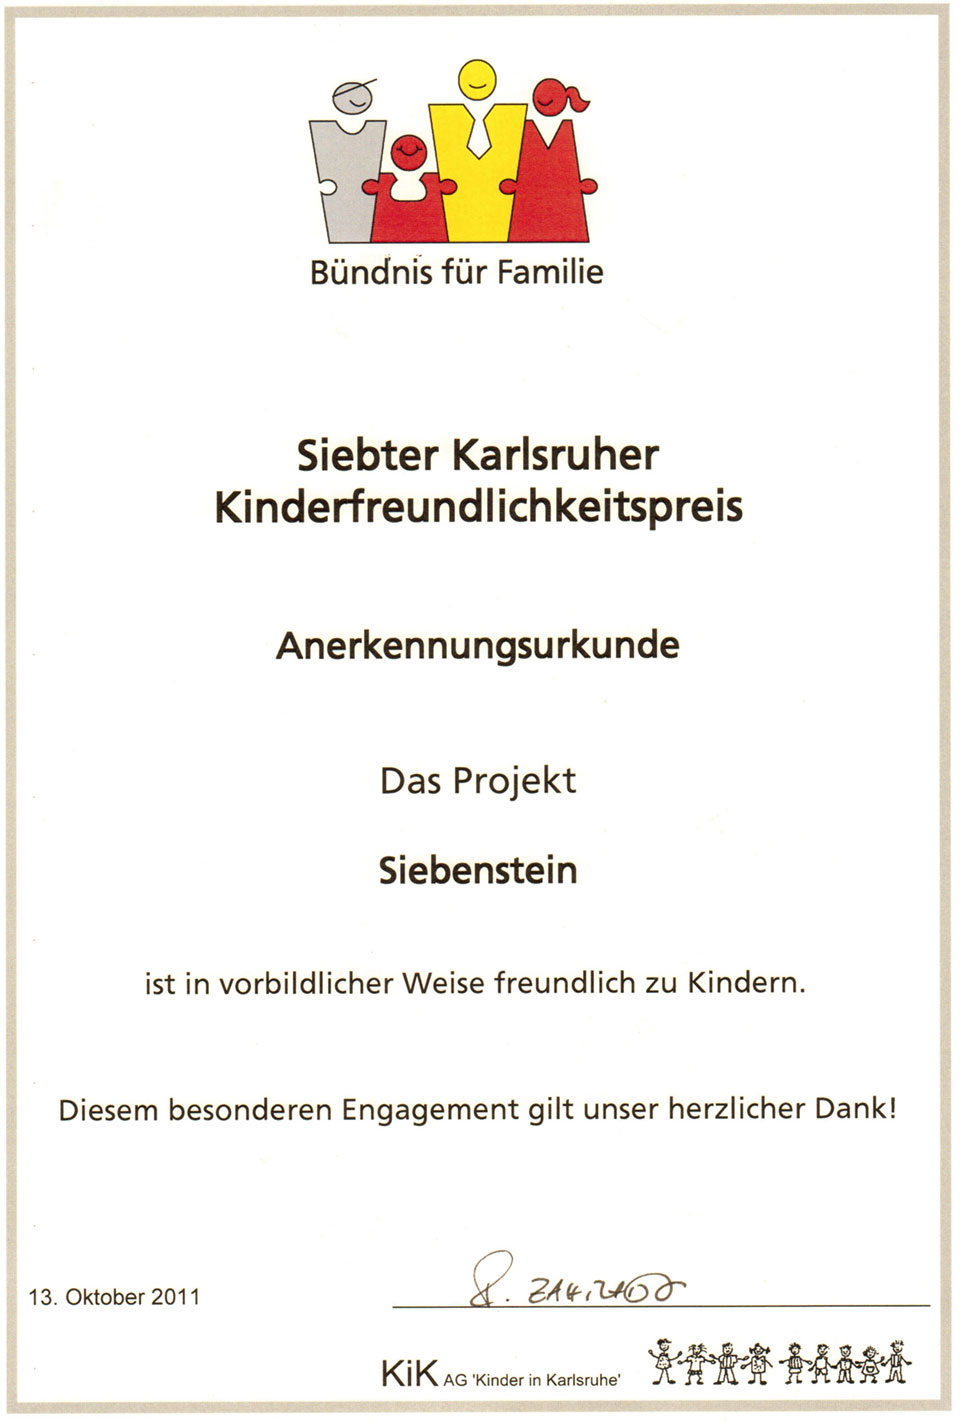 Siebter Karlsruher Kinderfreundlichkeitspreis